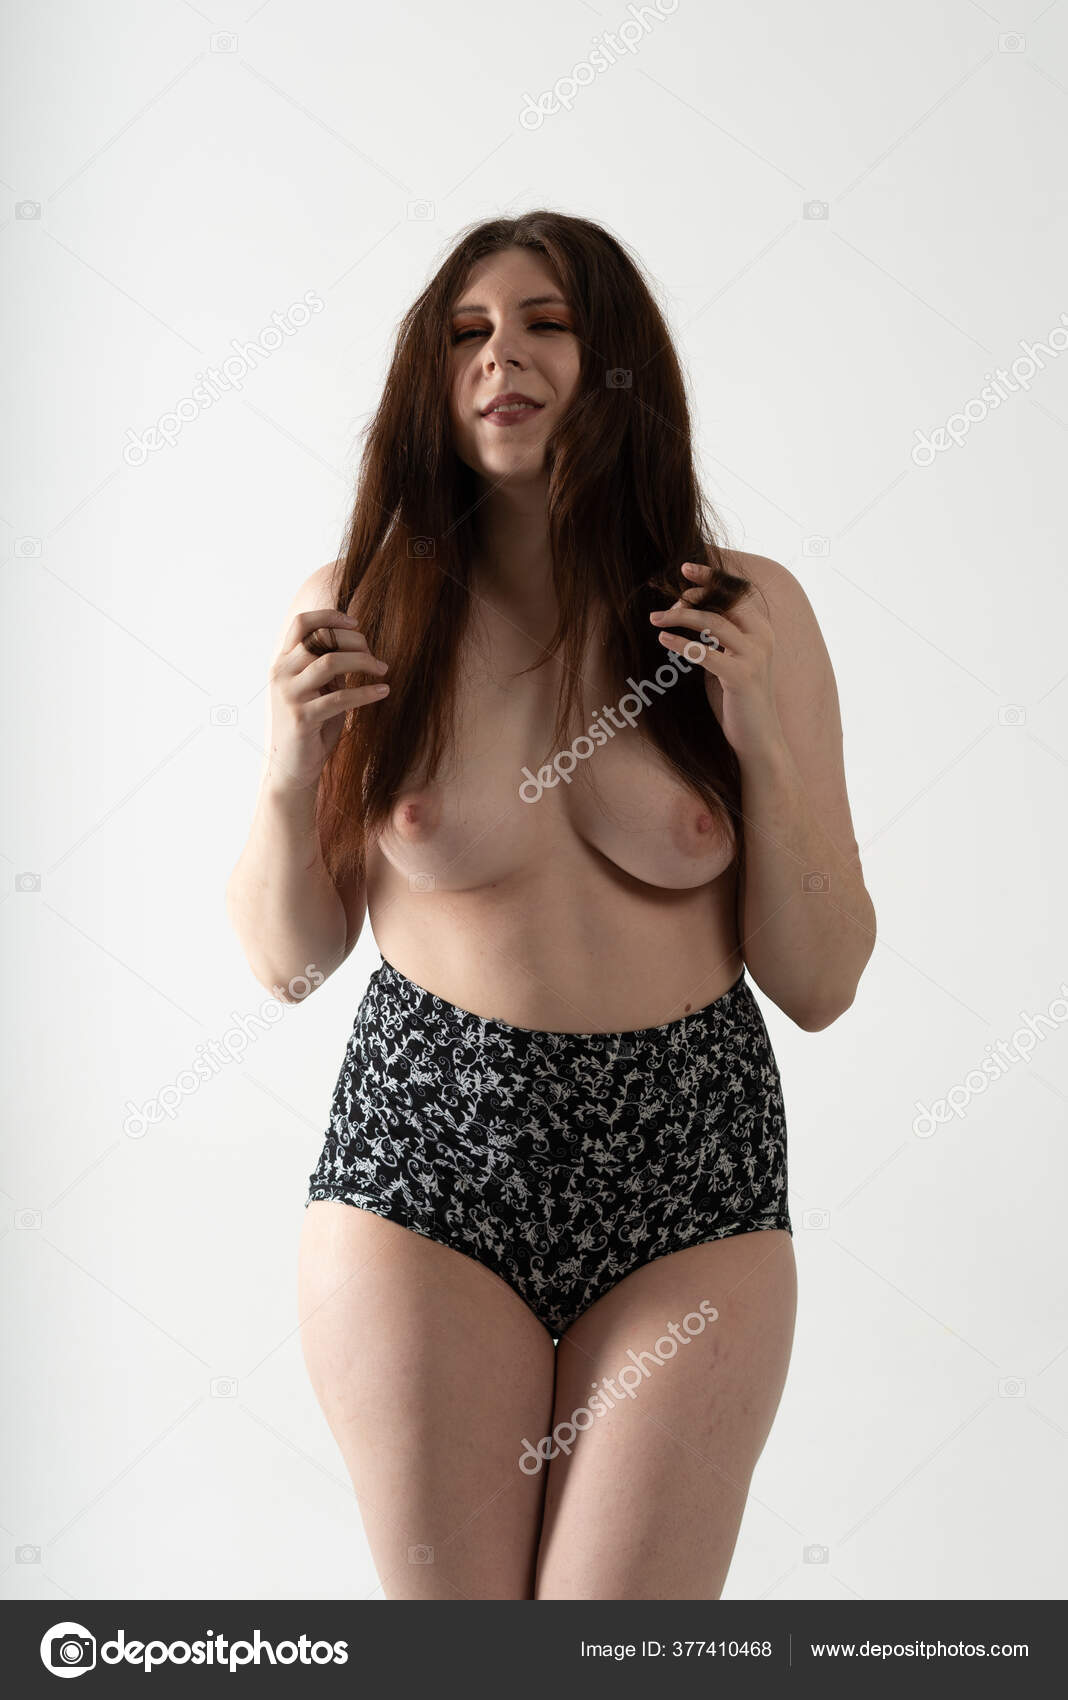 https://st3n.depositphotos.com/10086424/37741/i/1600/depositphotos_377410468-stock-photo-young-beautiful-girl-posing-nude.jpg